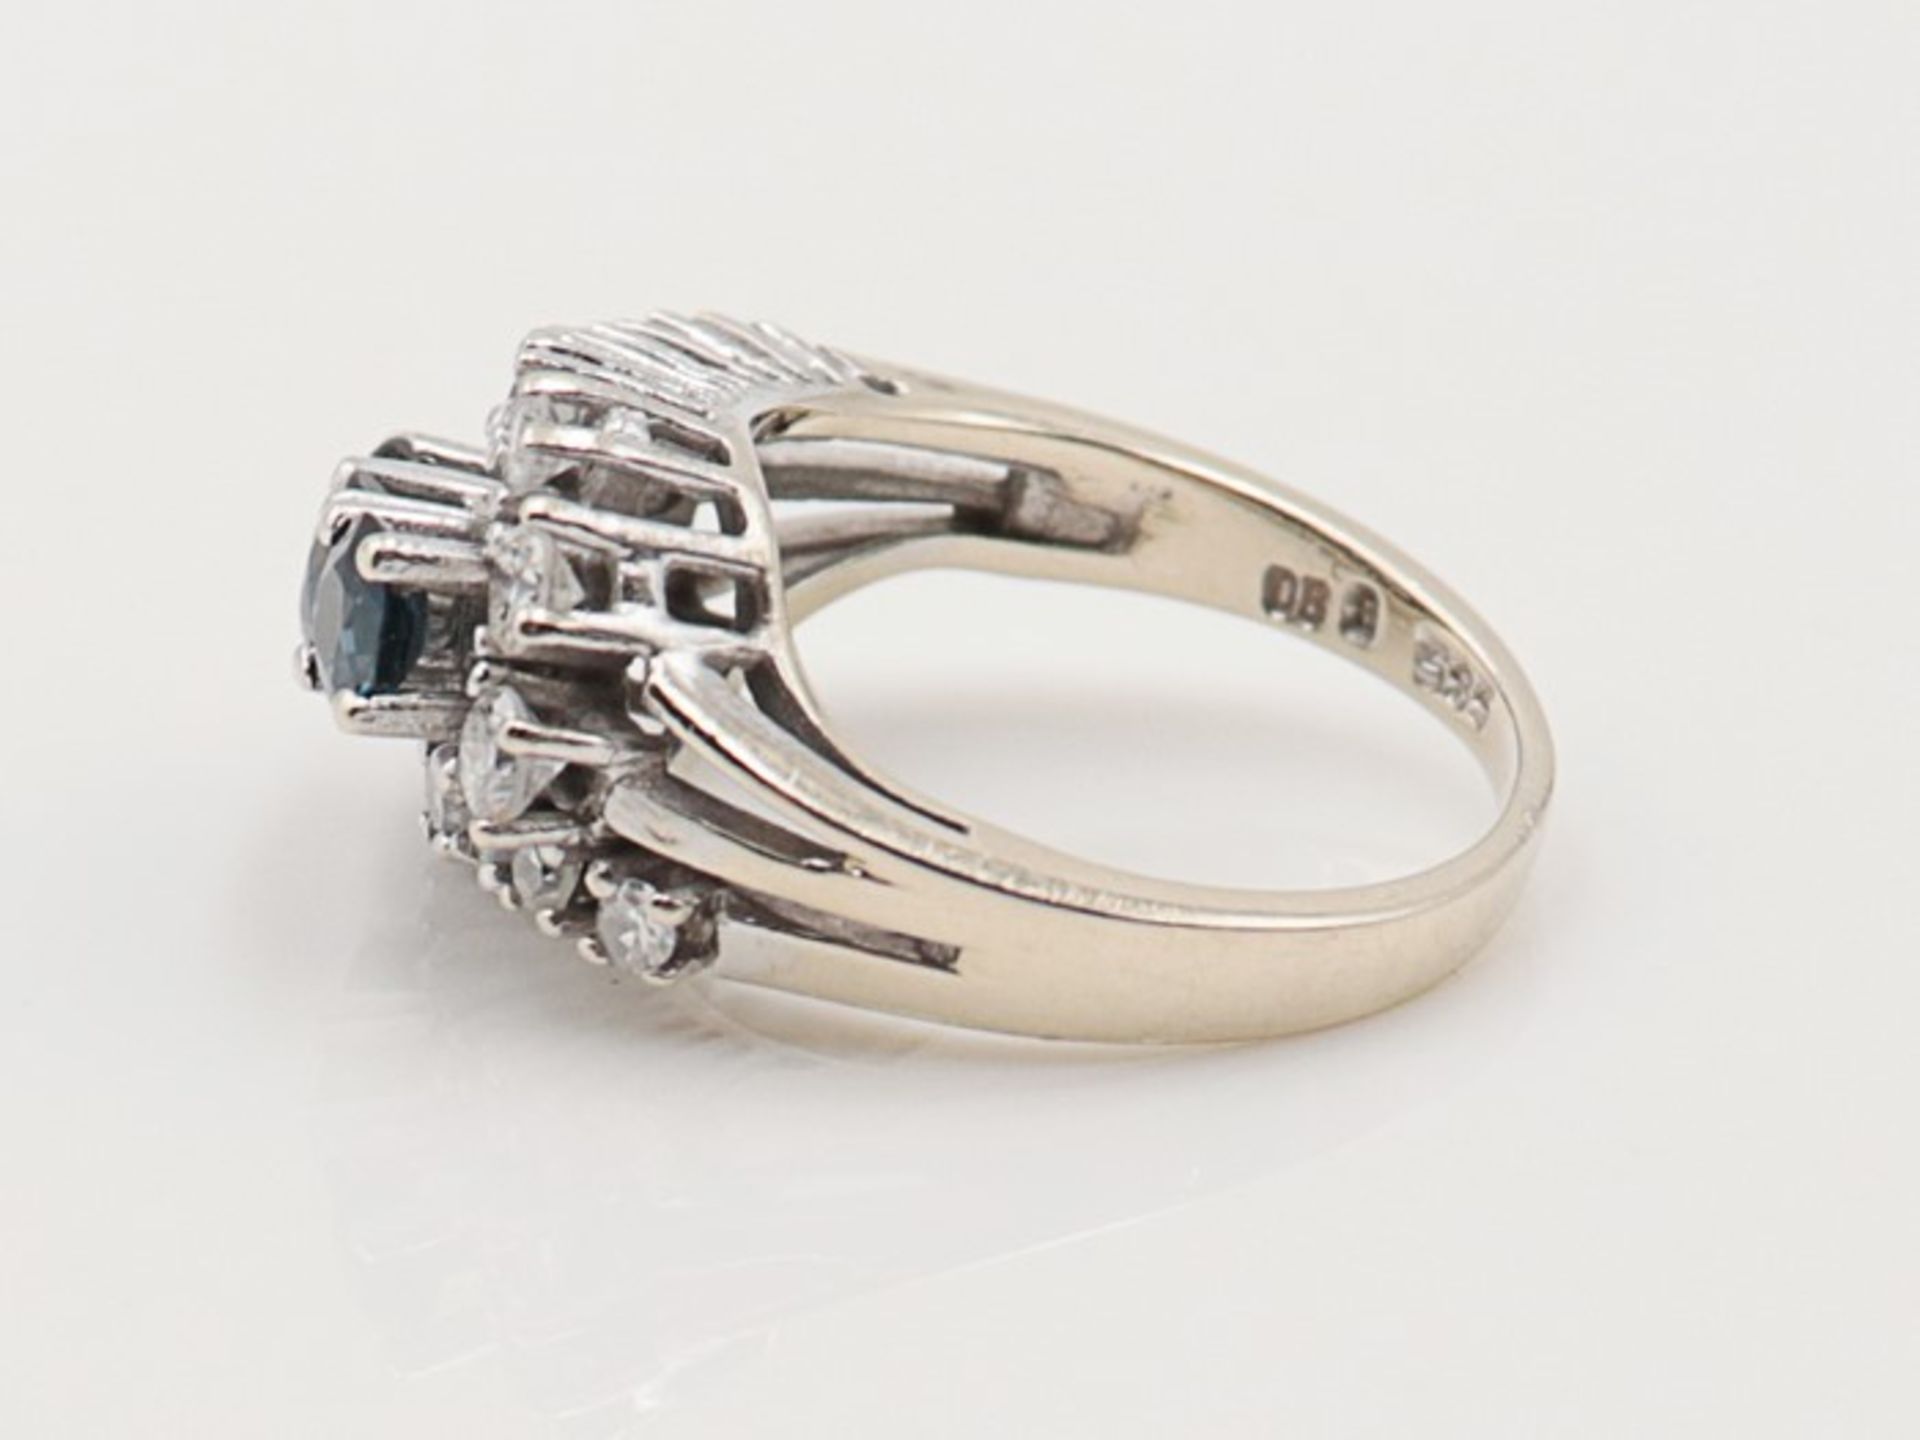 Diamant/Saphir - DamenringWG 585, wellenförmiger, durchbrochener Ringkopf, besetzt mit 3 Saphiren u. - Bild 3 aus 4